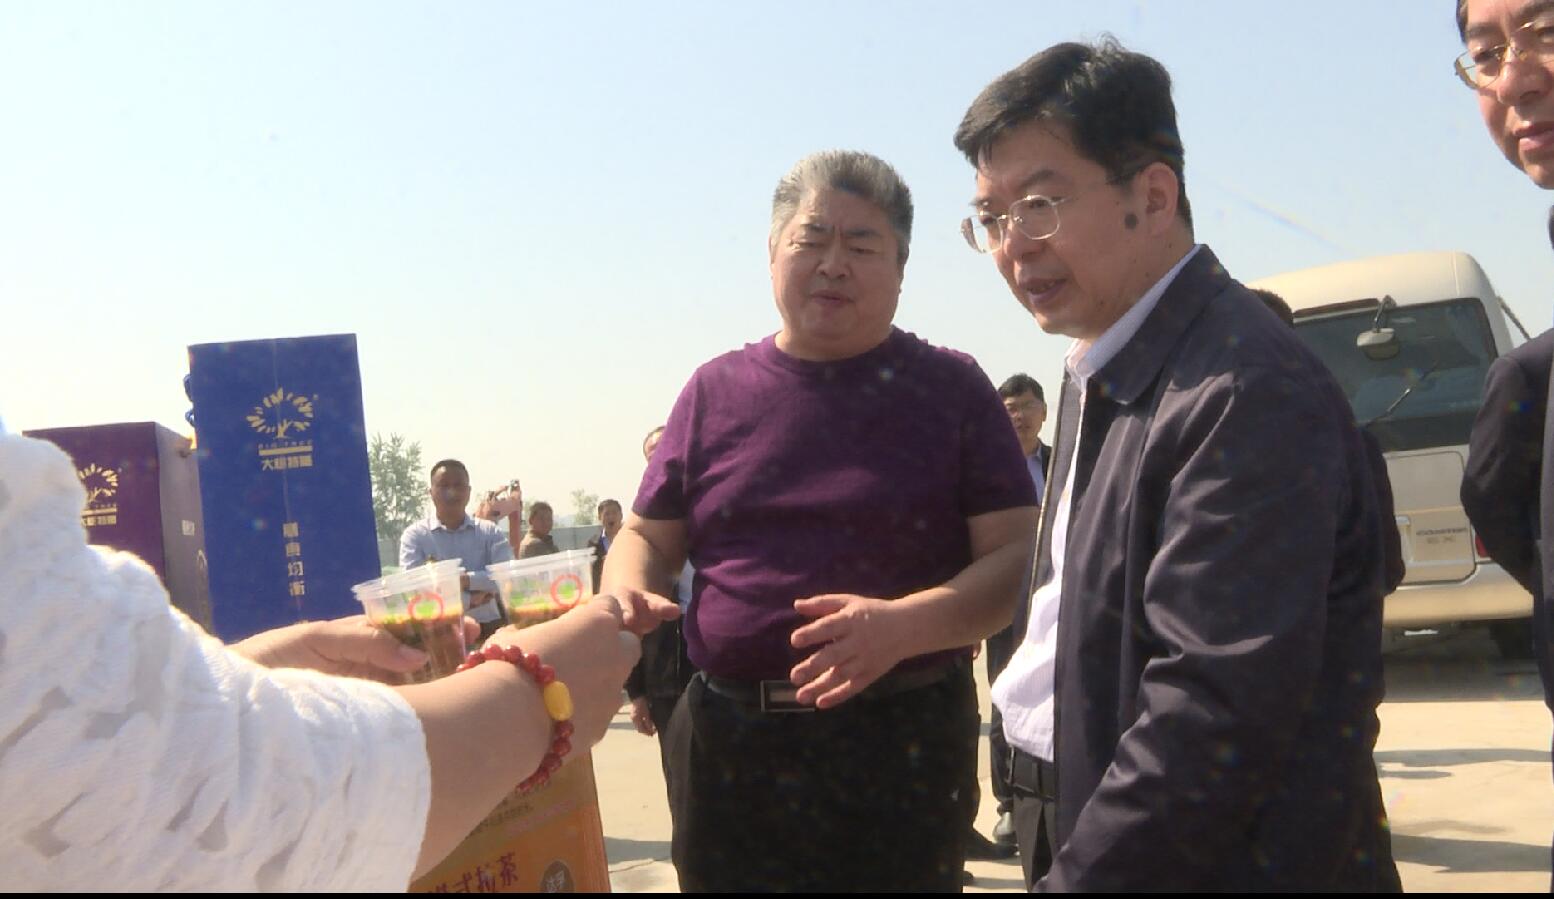 大树集团董事长李玉岭作为菏泽考察团代表到访南京中医药大学 - 大树集团